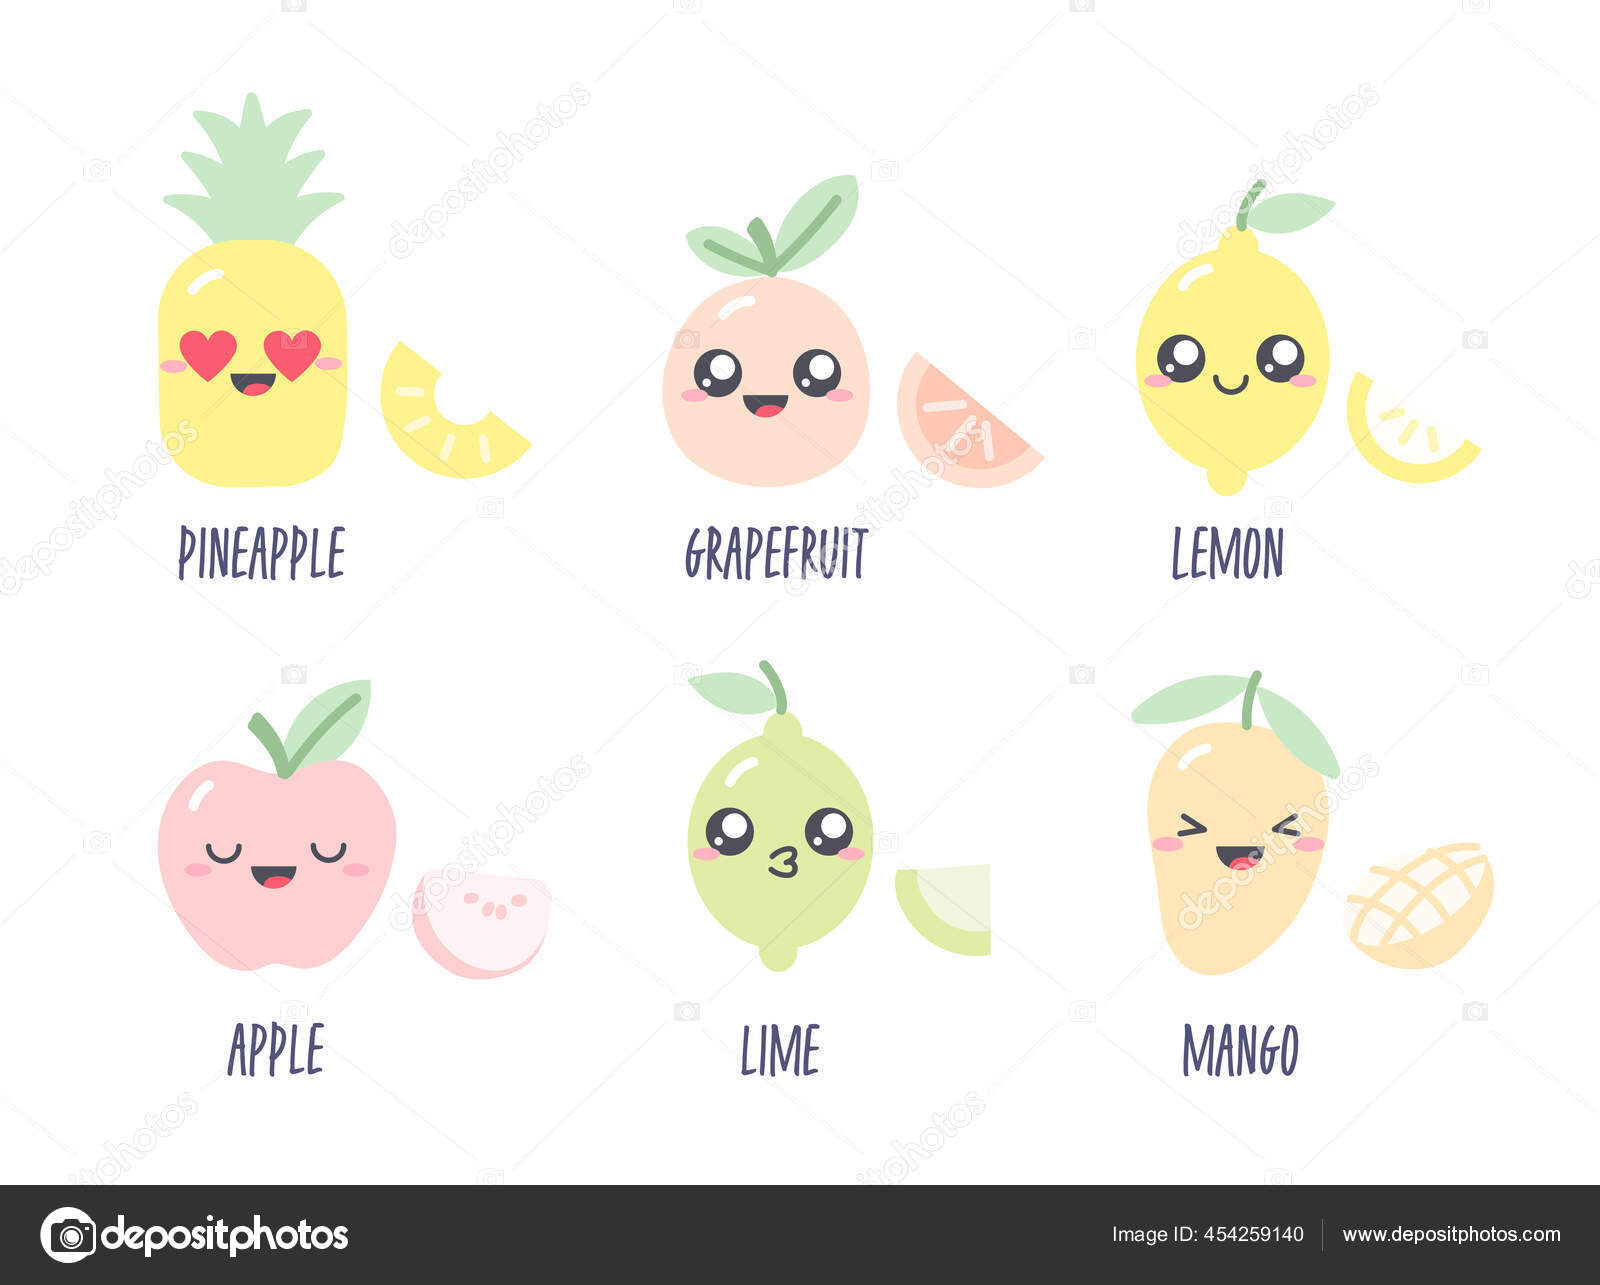 パステルカラーのフルーツキャラクターとかわいい図面のコレクション フルーツアップル パイナップル ライム レモン グレープフルーツ マンゴーなどのカワイイイラストがセットになっています ストックベクター C Tannikart